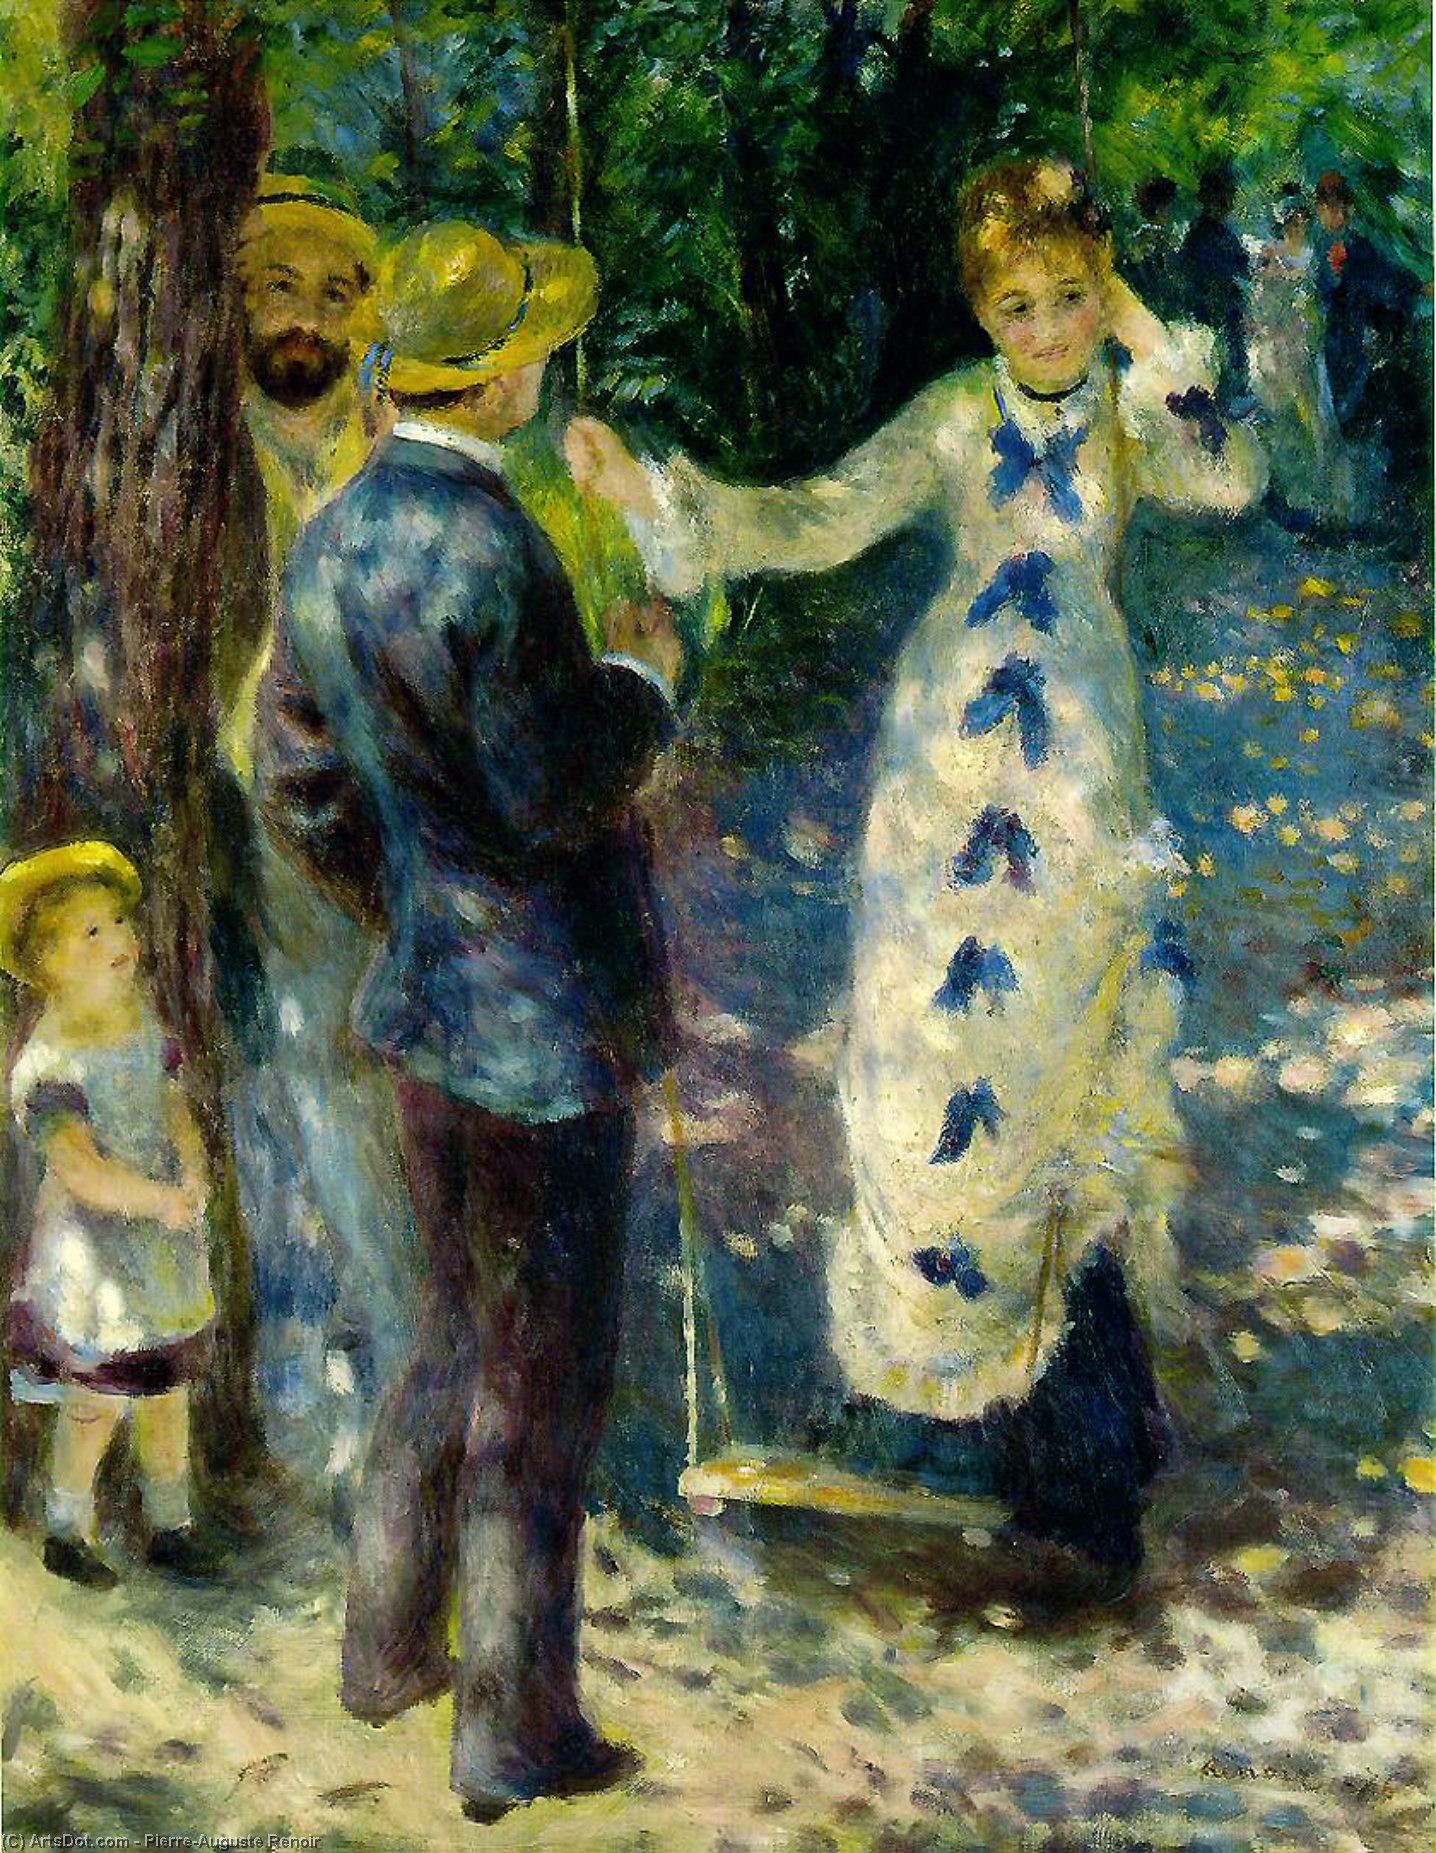 WikiOO.org - Encyclopedia of Fine Arts - Målning, konstverk Pierre-Auguste Renoir - The swing, Musée d'Orsay, Paris